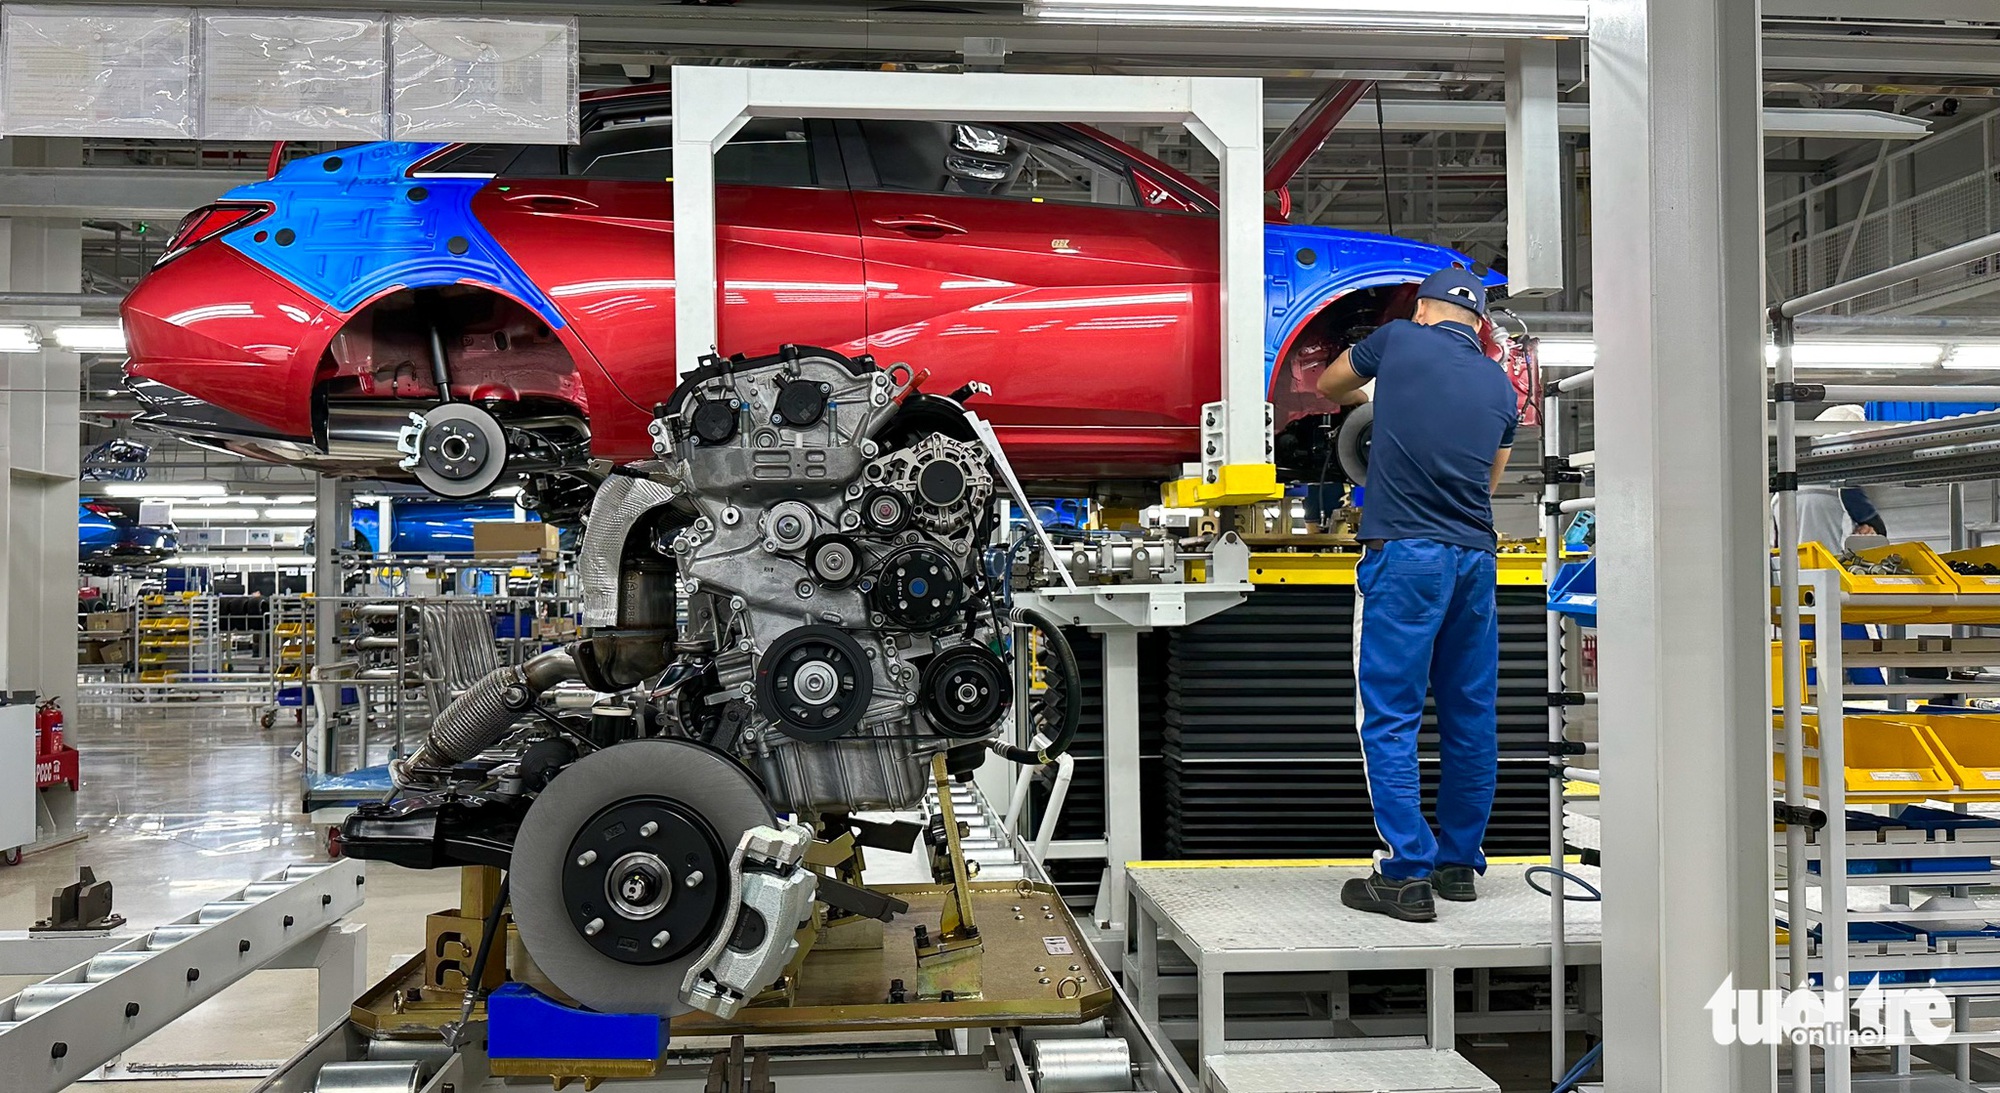 Nhà máy Hyundai Thành Công: Bạn muốn tìm hiểu về nhà máy sản xuất xe ô tô hàng đầu tại Việt Nam và thế giới? Hãy xem ngay hình ảnh này để khám phá các quy trình sản xuất tiên tiến và những chiếc xe chất lượng không thể bỏ qua từ nhà máy Hyundai Thành Công.